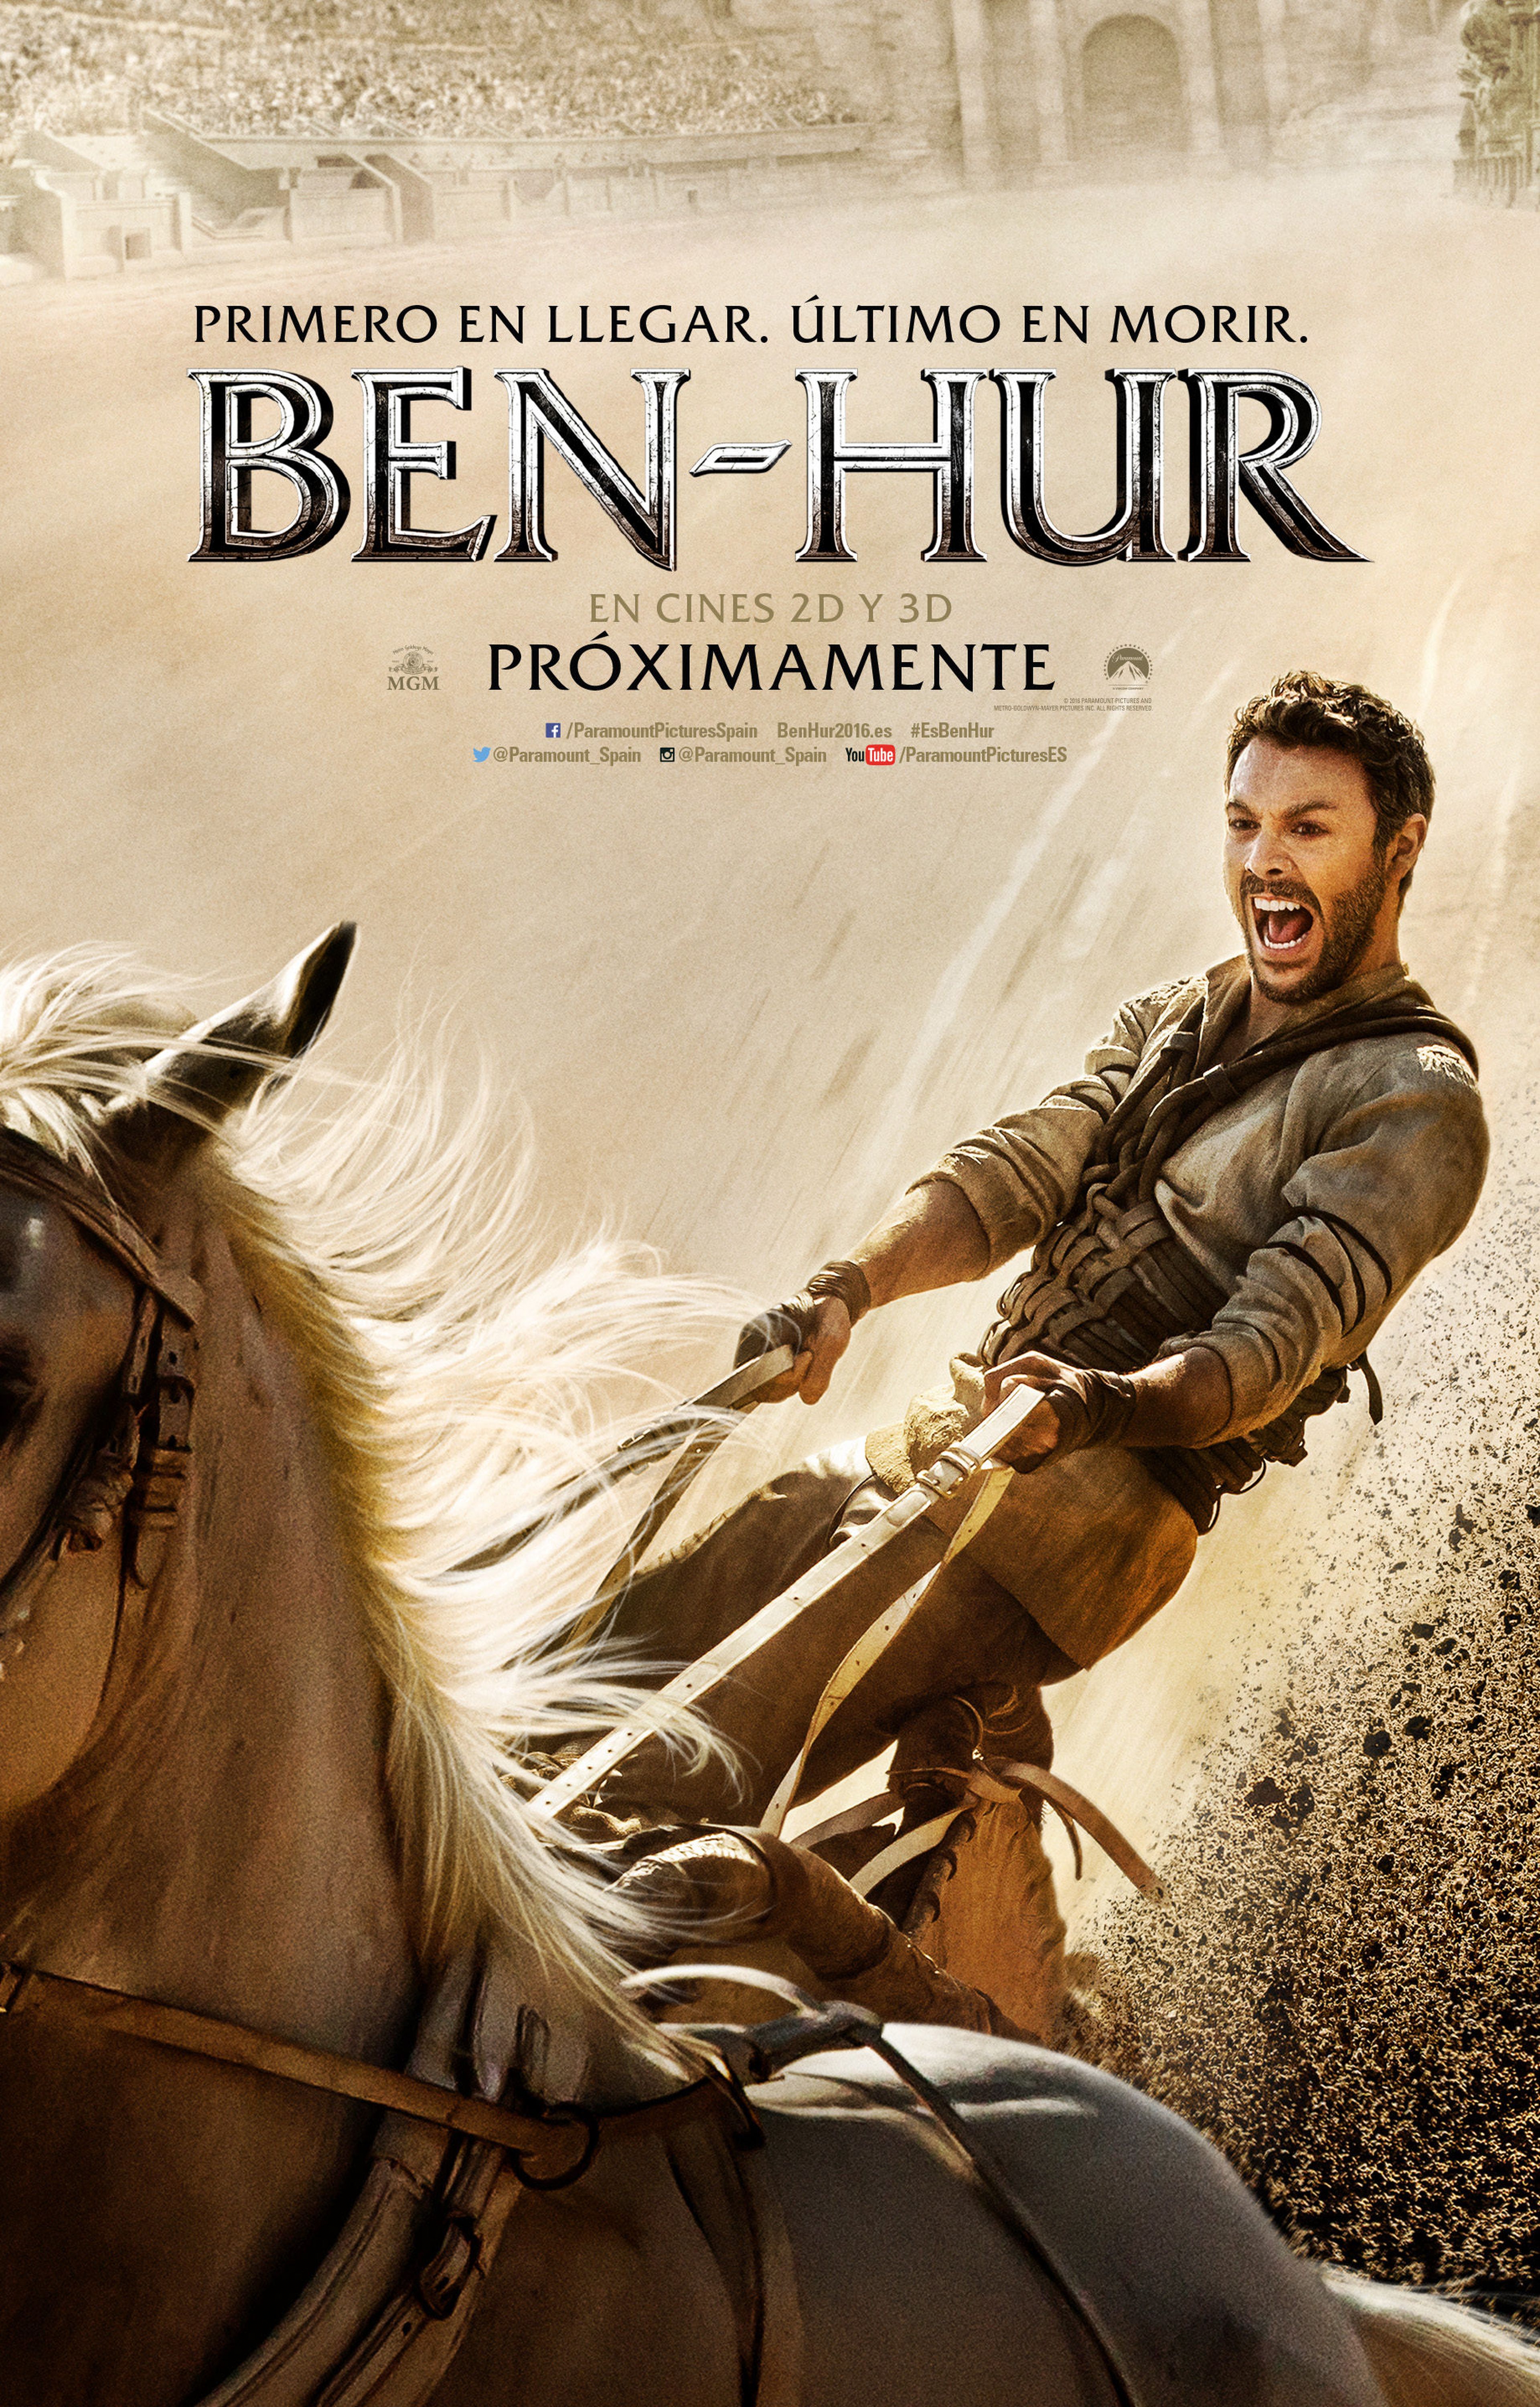 Ben-Hur - Tráiler del remake con Jack Huston, Toby Kebbell y Morgan Freeman